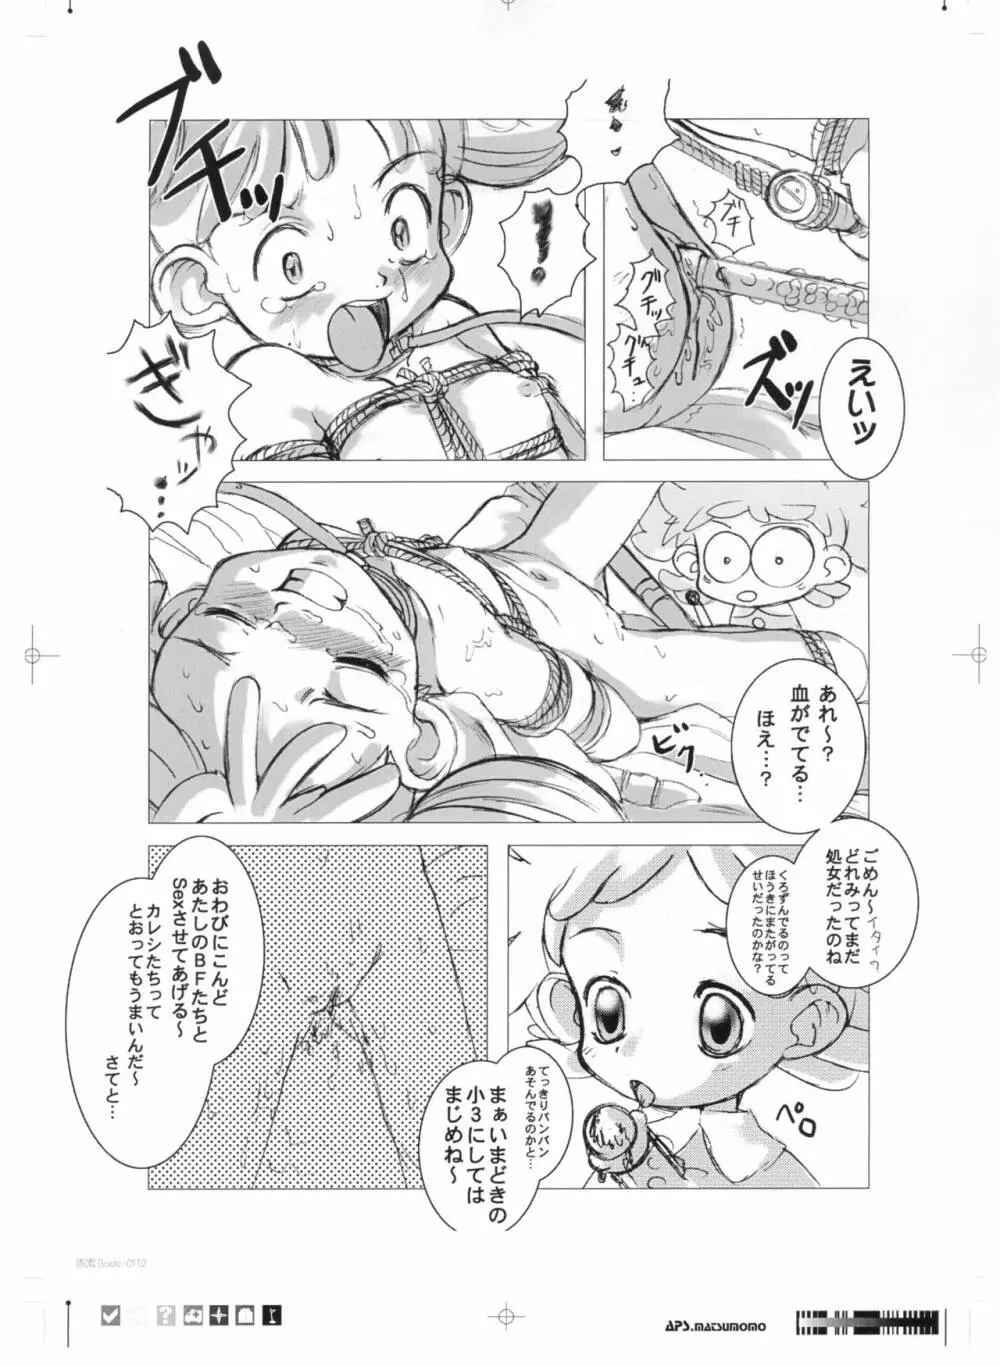 画素BooK 原稿用紙 キッズアニメトロニカ -0112 24ページ